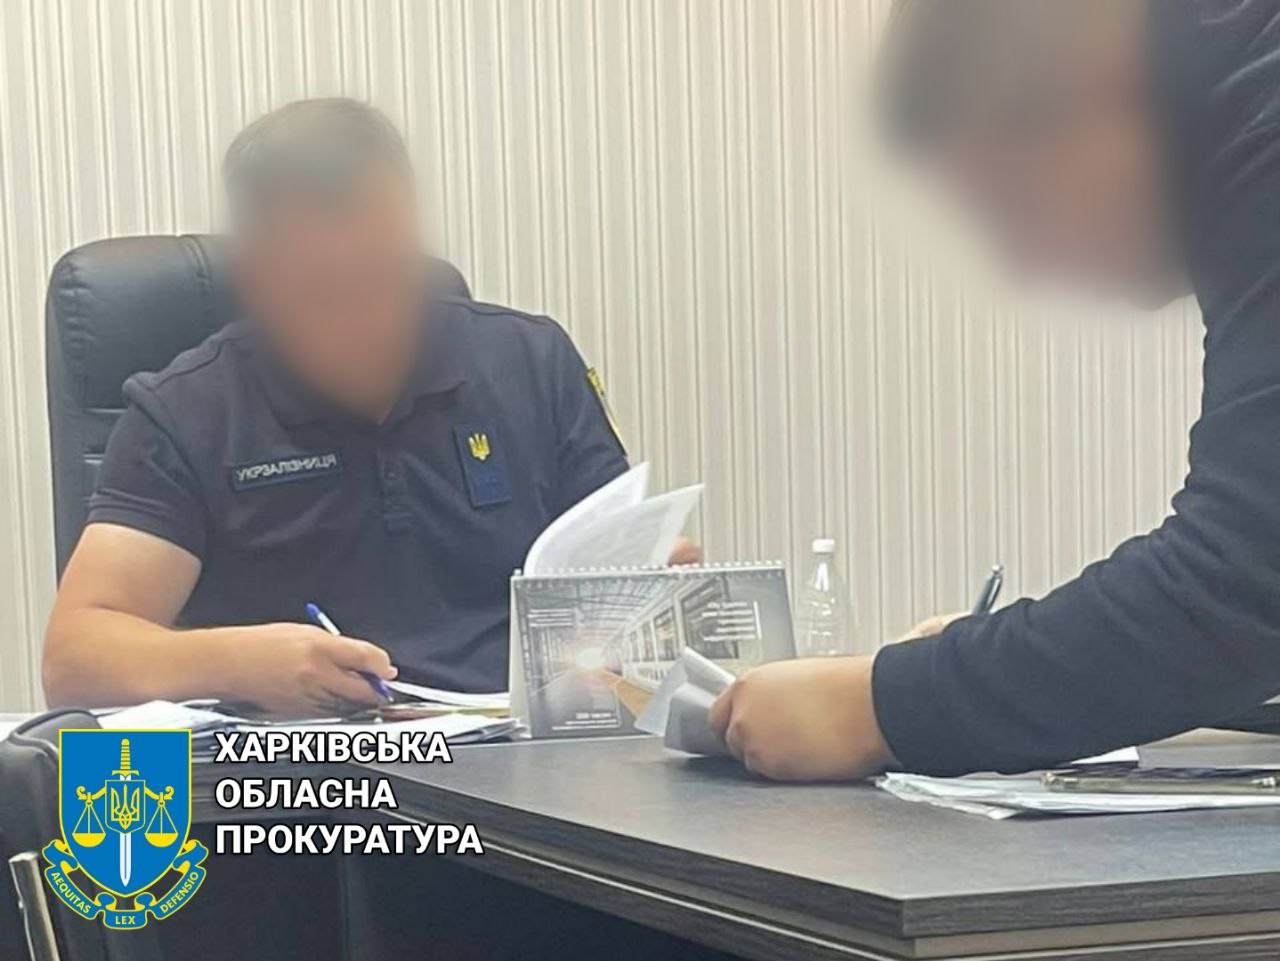 Збитки державі на суму 1,5 млн грн – підозрюється службова особа регіональної філії Укрзалізниці